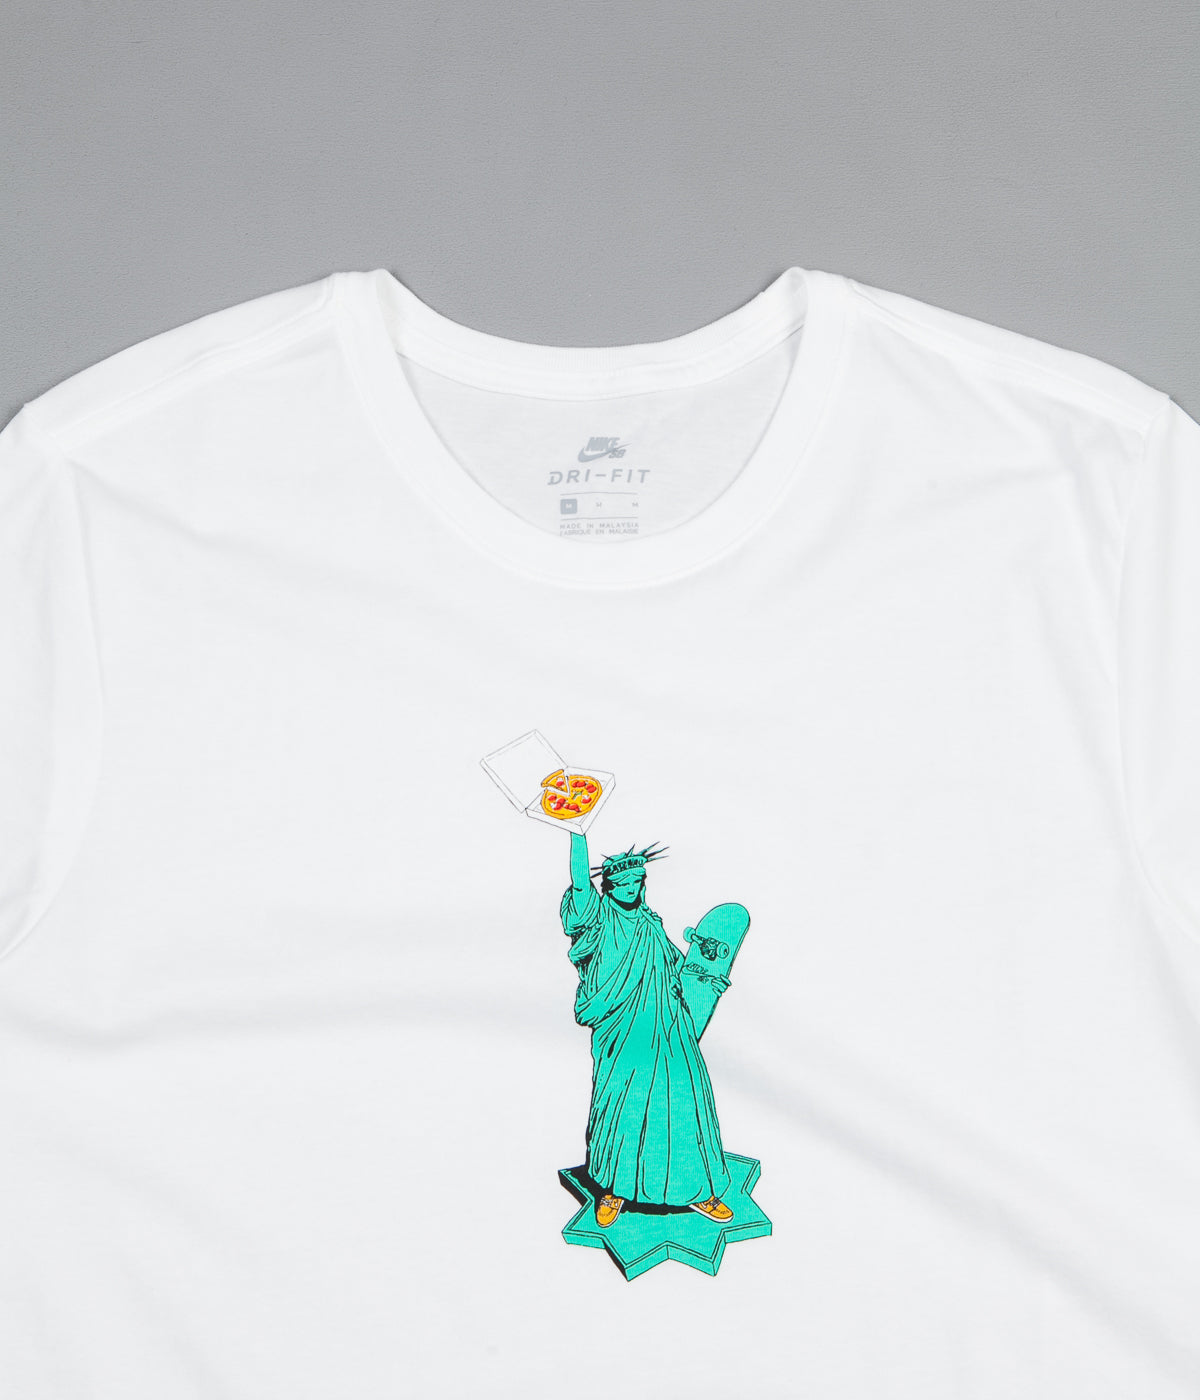 nike statue of liberty t shirt